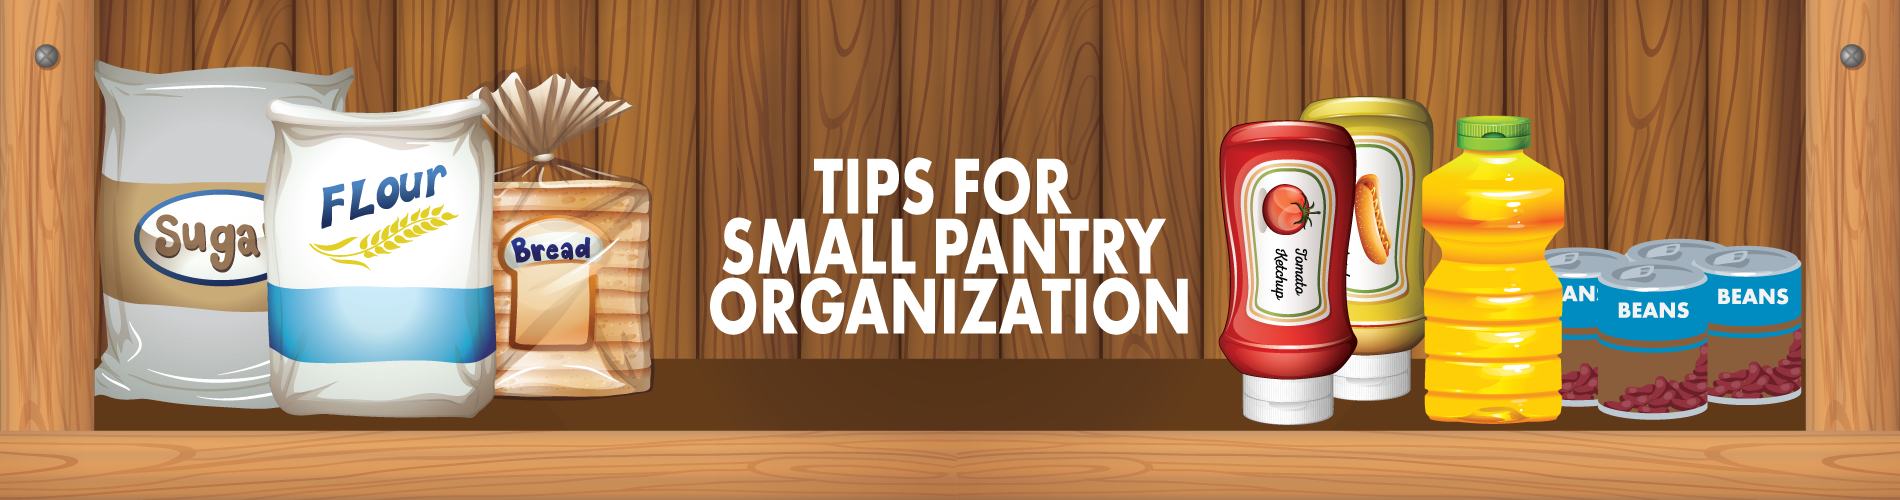 Small Pantry Organization